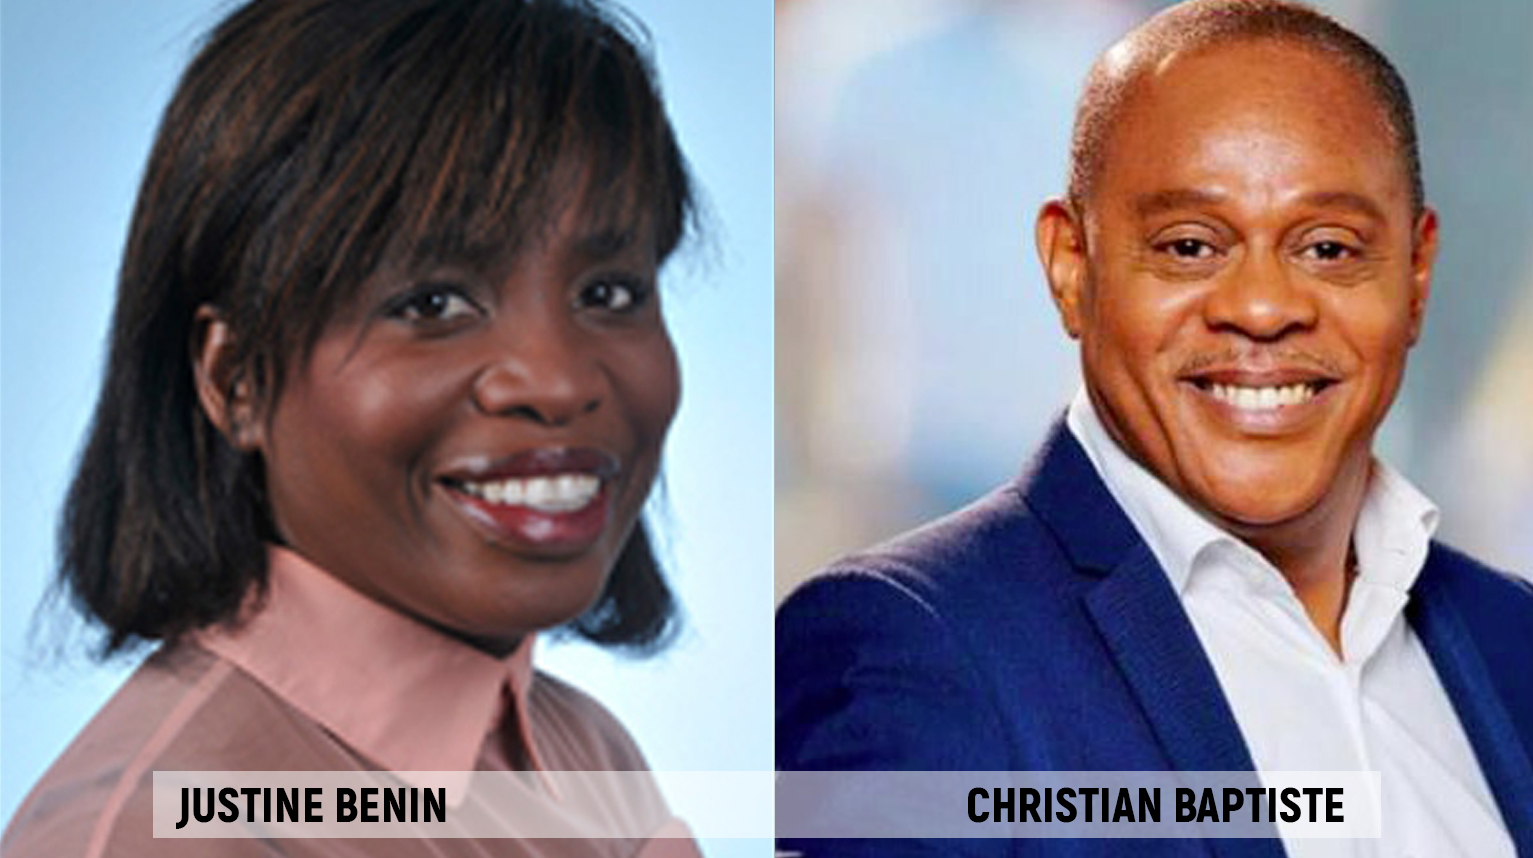     Législatives 2022 : Justine Benin et Christian Baptiste en duel au second tour dans la circonscription 2

